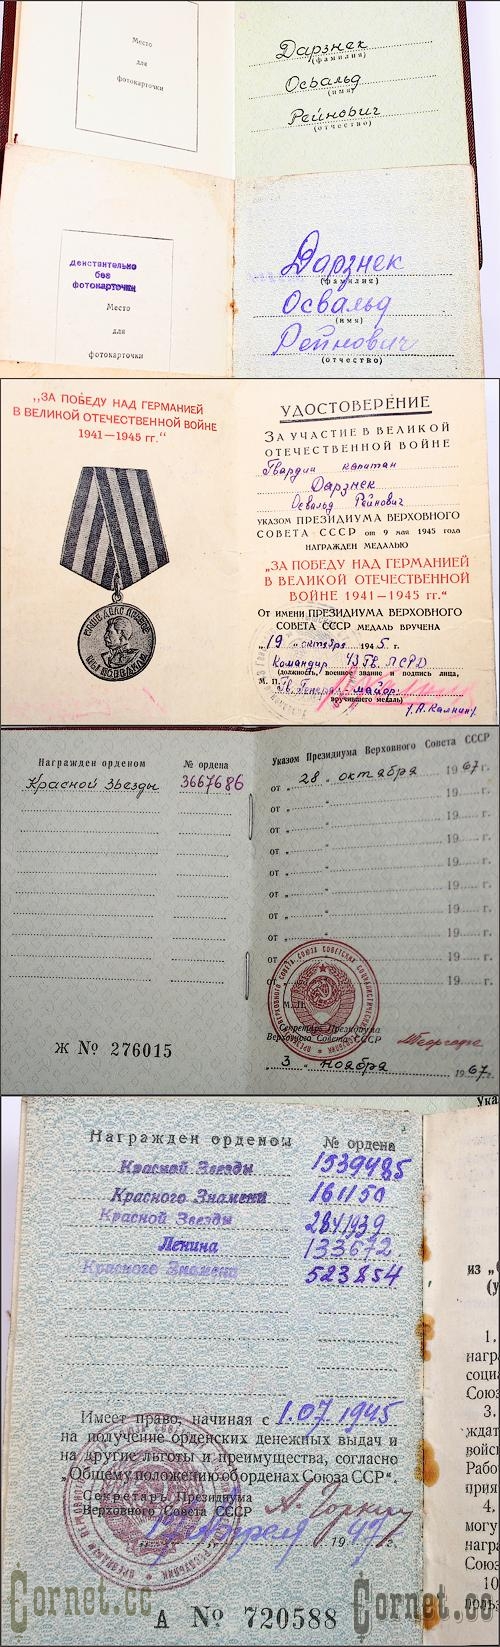 Set of awards NKVD - KGB